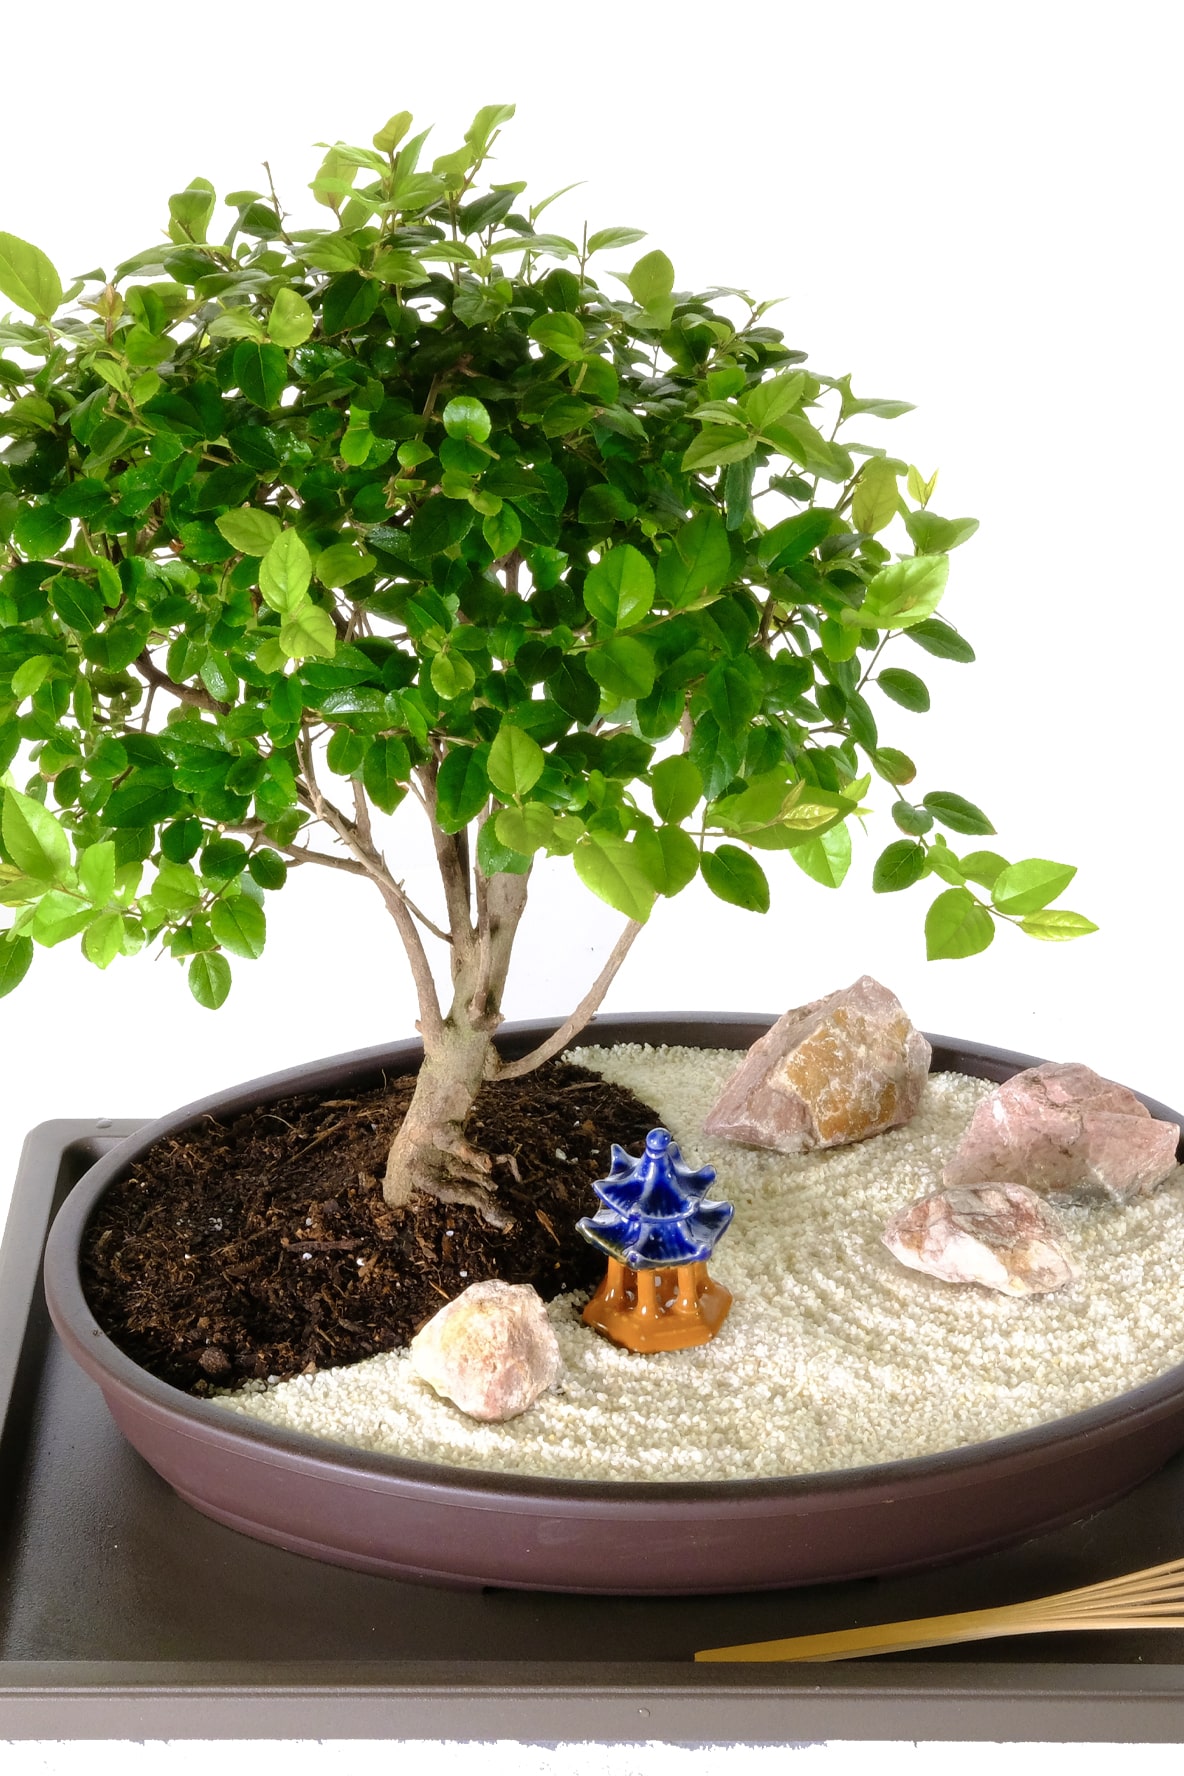 Mini Zen Garden  Bonsai Tree Zen Garden - Ideal for desk